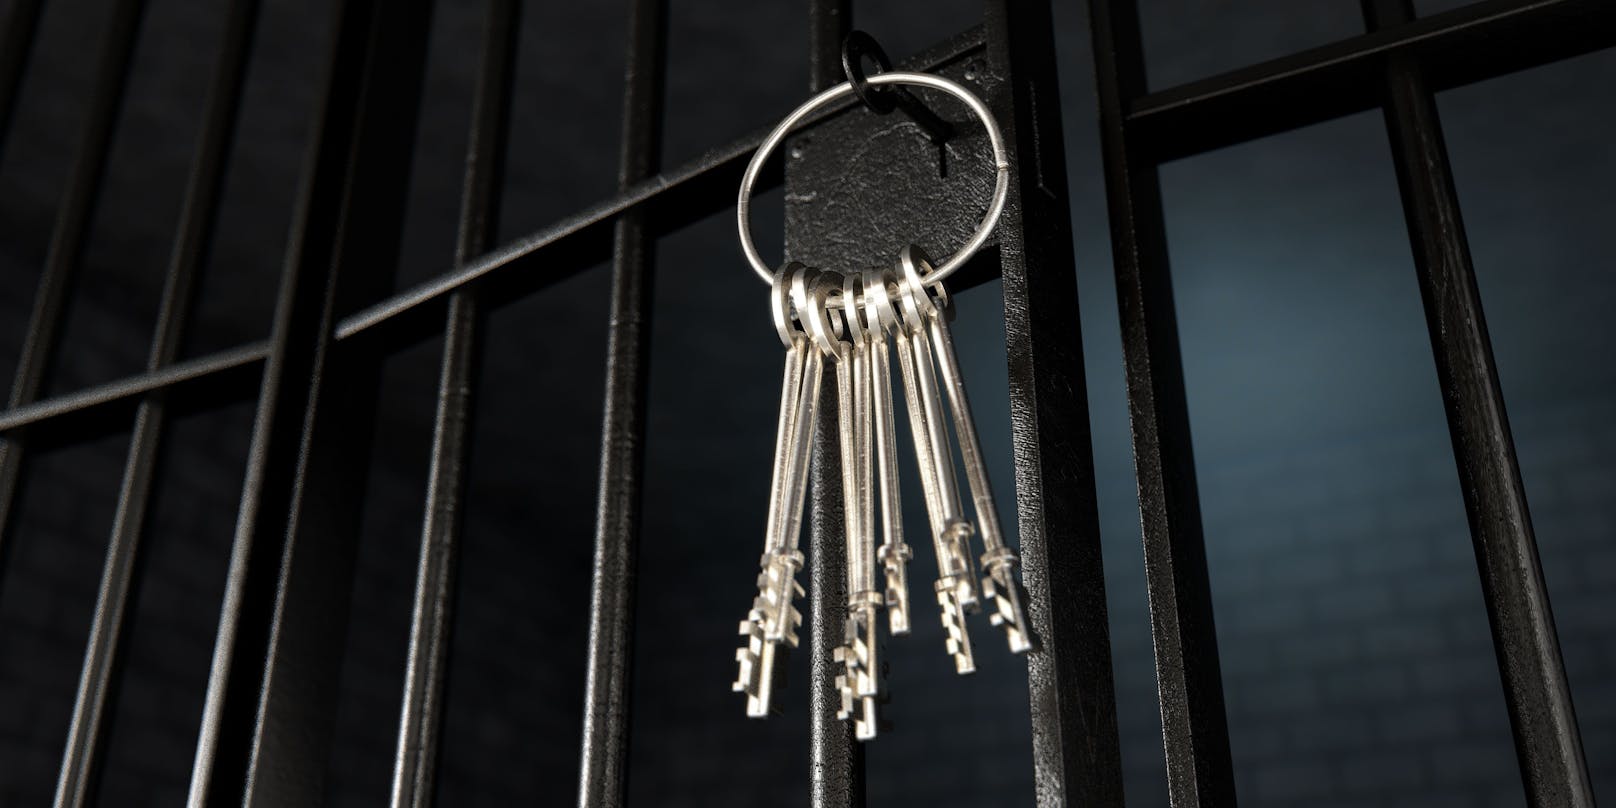 Das Schlüsselprofil für Gefängnistüren ist ein gut gehütetes Geheimnis. Deswegen&nbsp;mussten in der Justizvollzugsanstalt Heidering rund 600 Schlösser ausgetauscht werden.